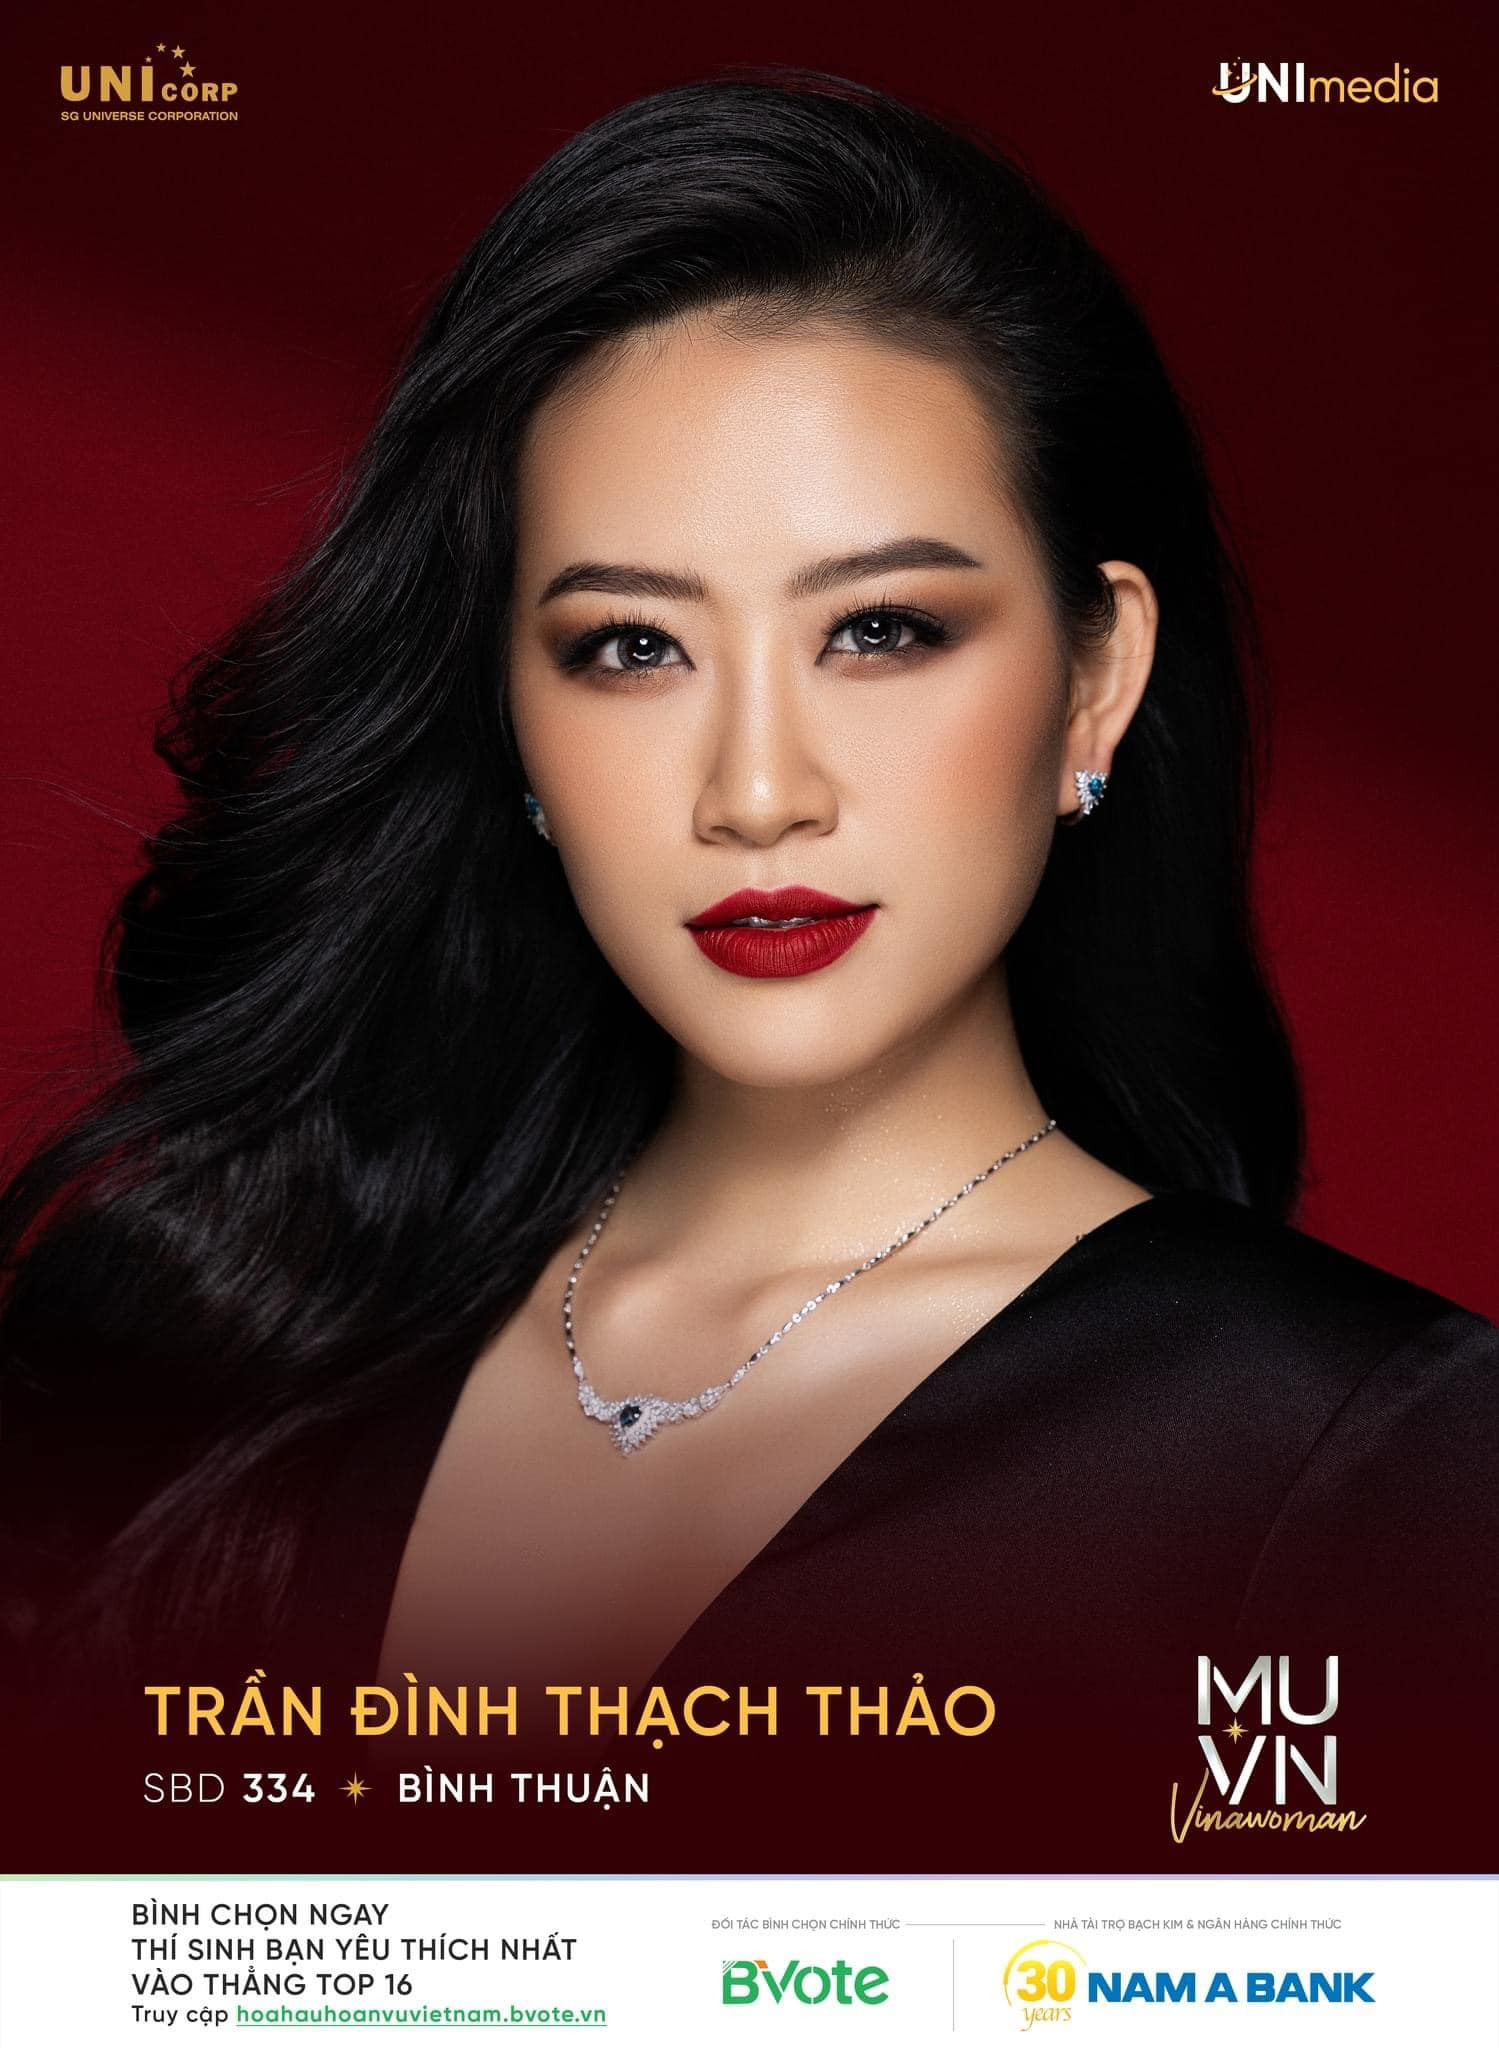 Nguyễn Thị Ngọc Châu - SBD 314 vence miss universe vietnam 2022. - Página 3 VWJmEN